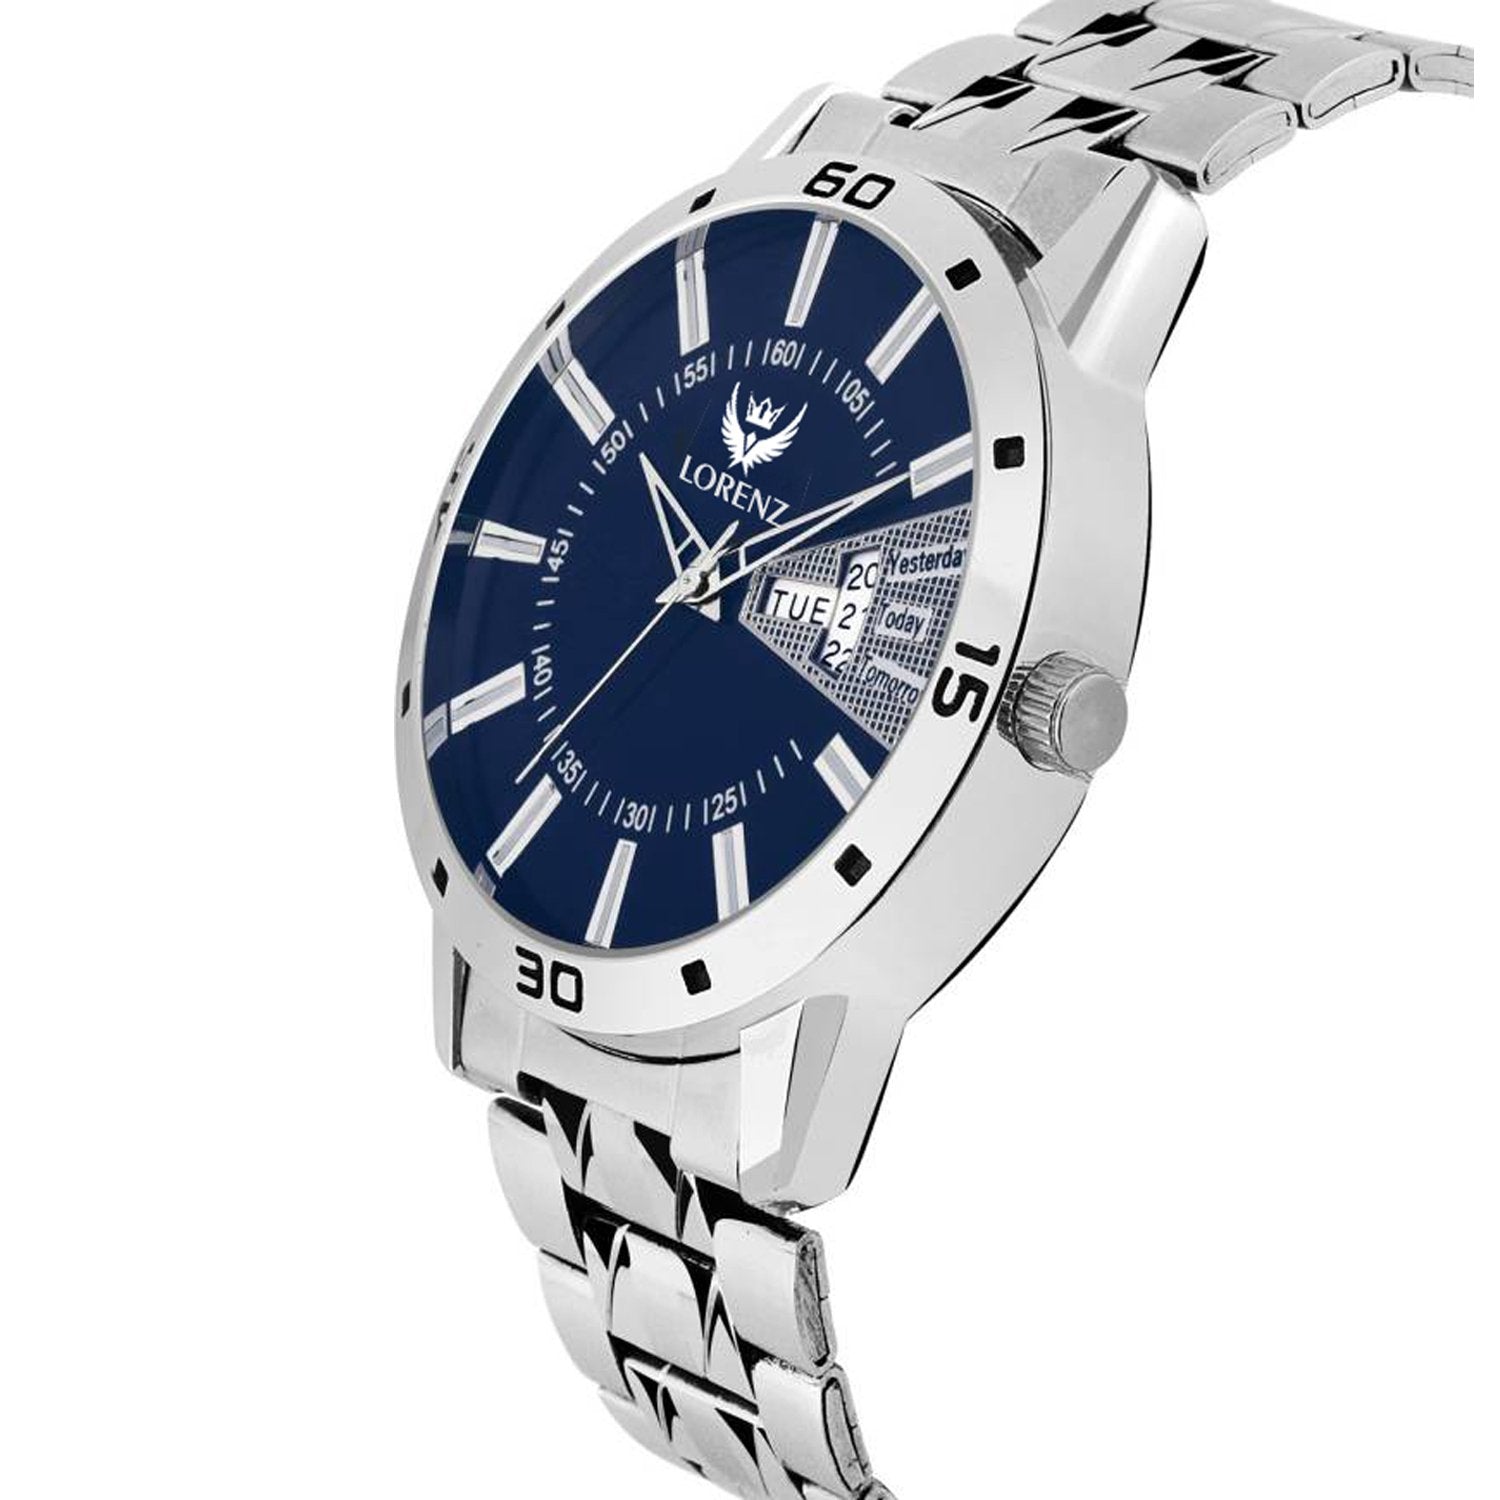 Lorenz Analog Blue Dial Day & Date Edition Men's Wrist Watch- MK-1065A - Lorenz Fashion